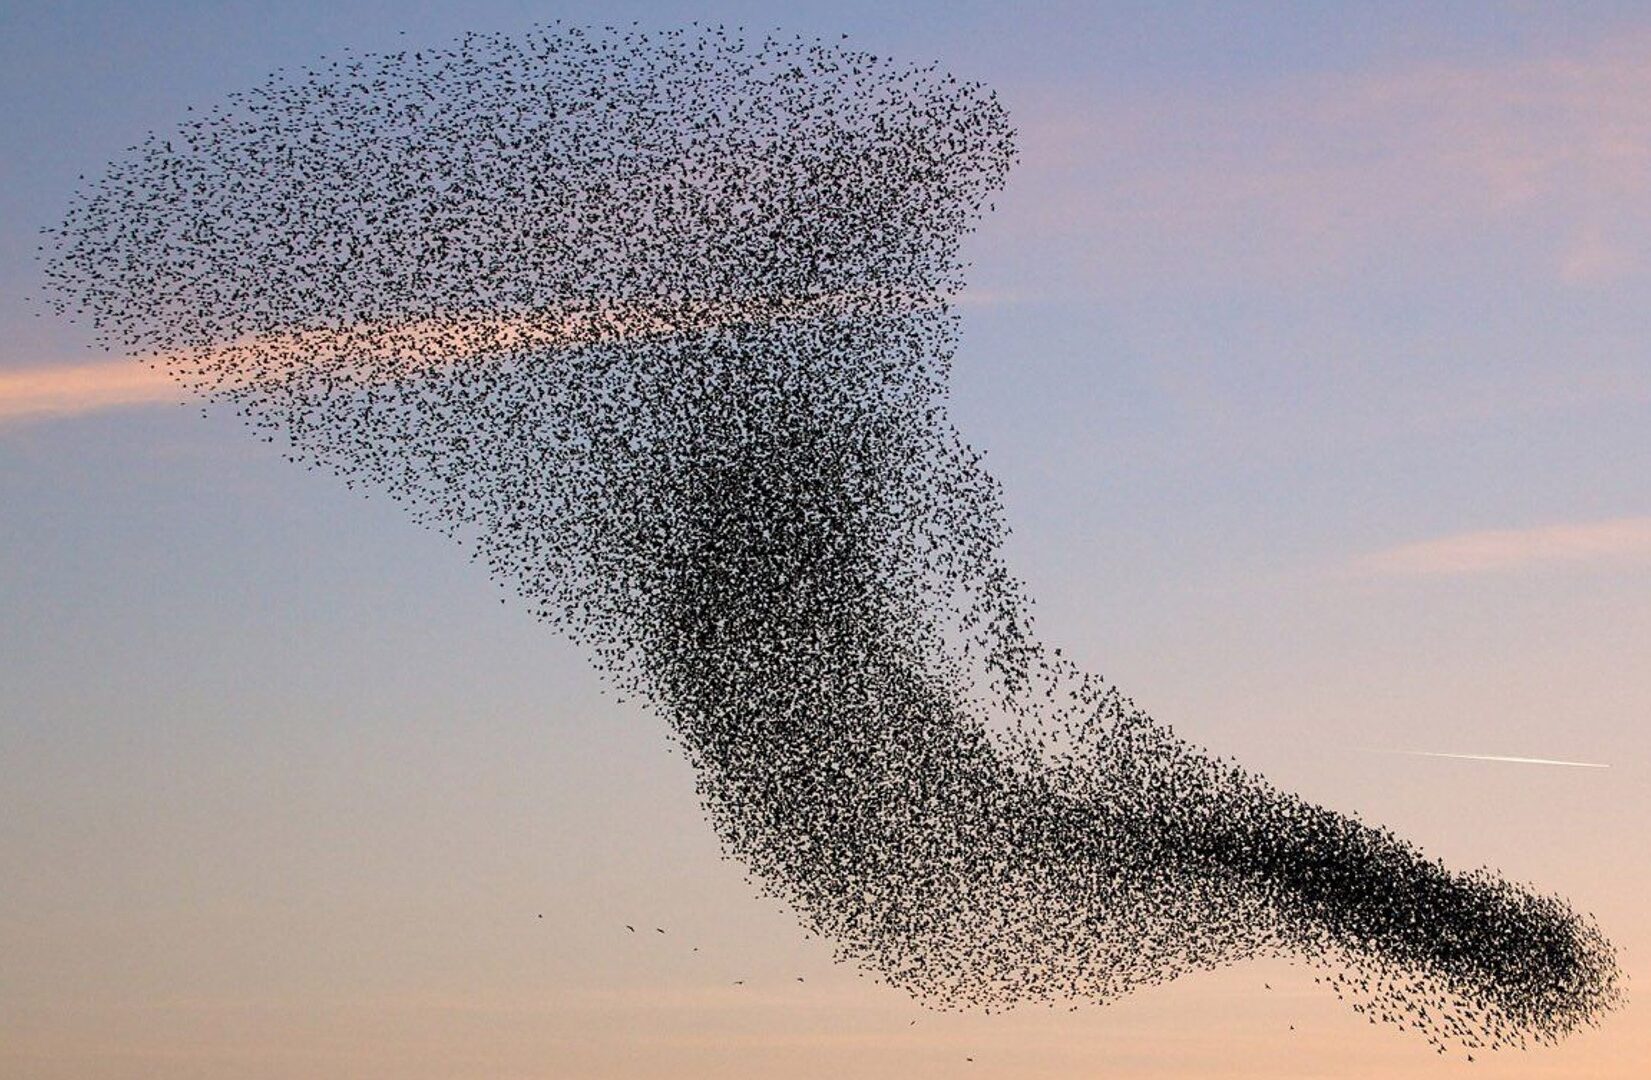 Vogels vliegen in samenspel